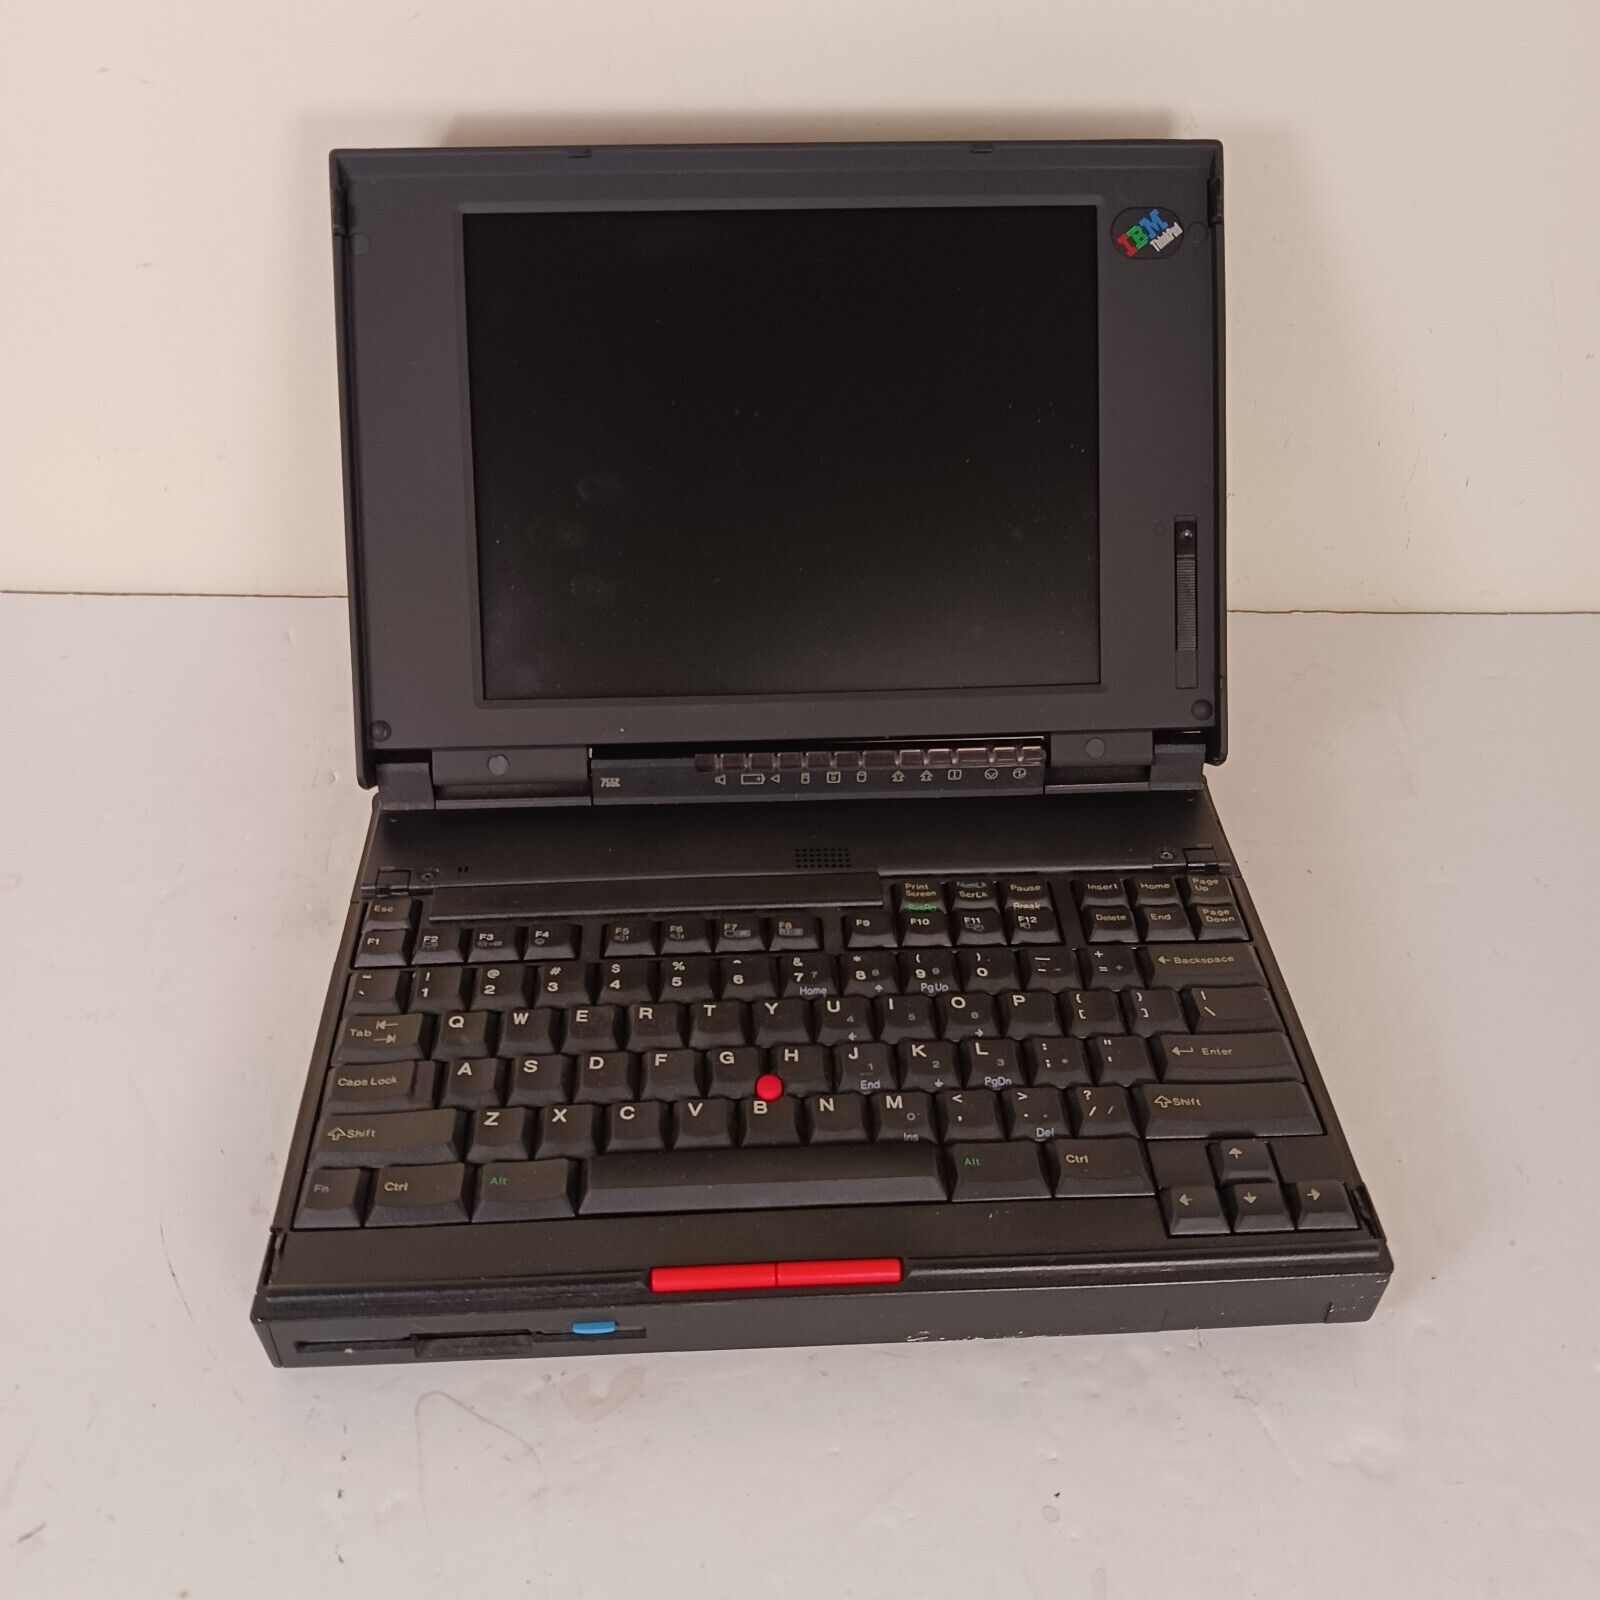 Vintage IBM ThinkPad 755c Laptop Computer Model 9545 UNTESTED